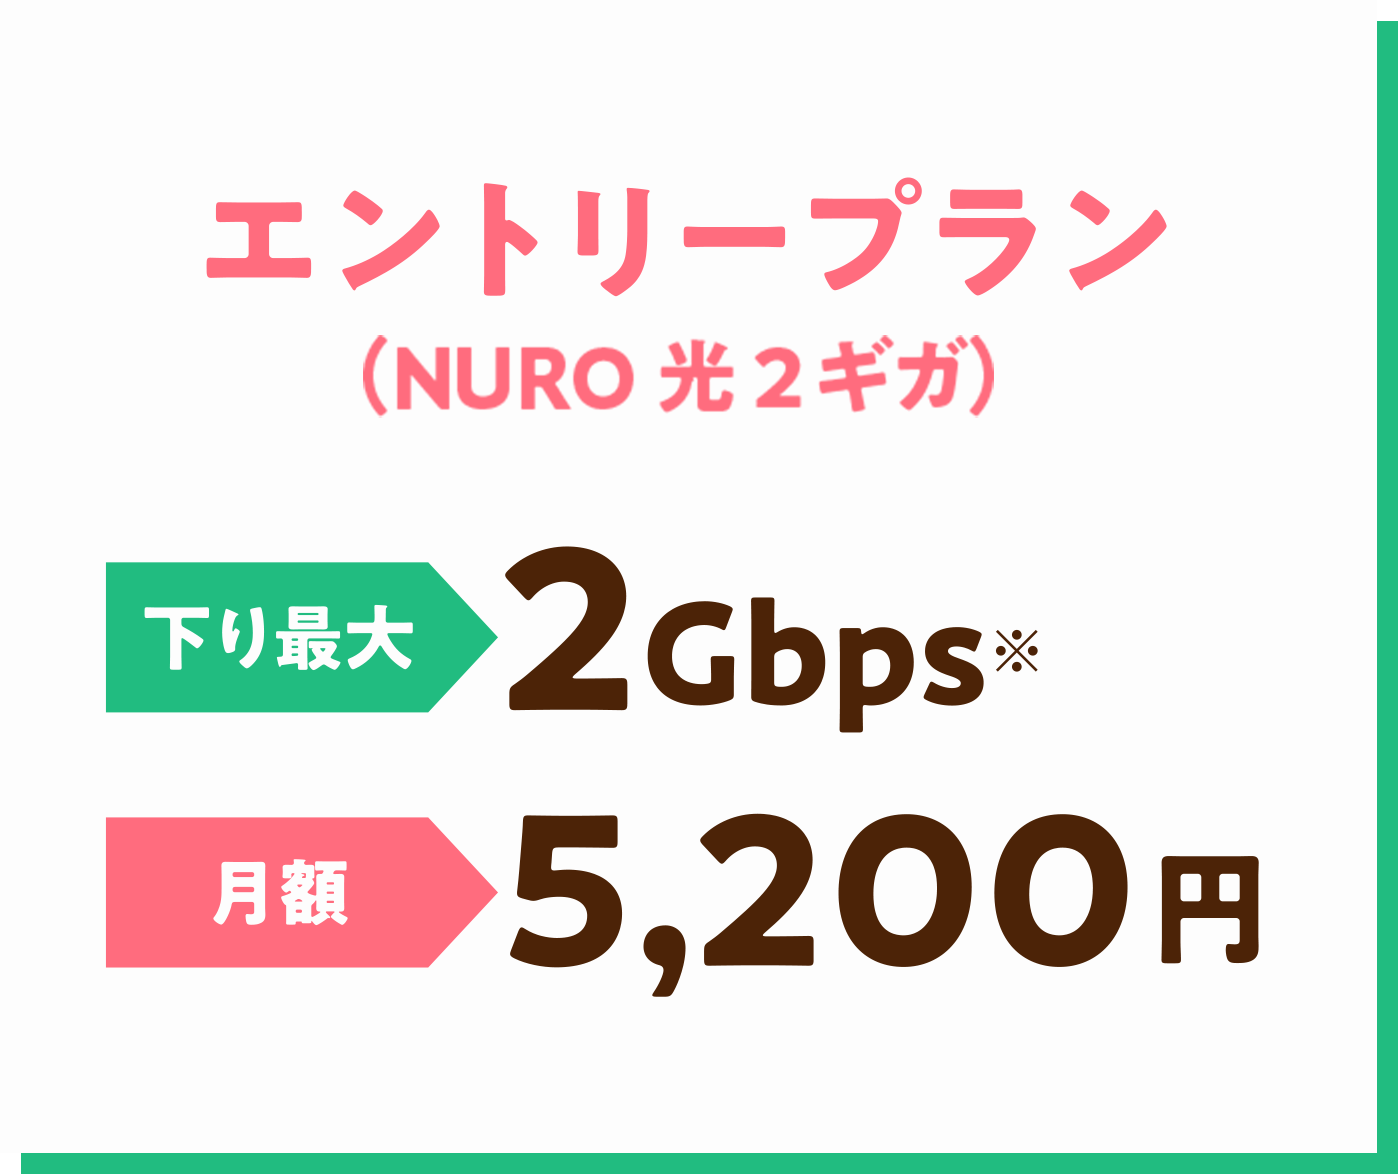 エントリープラン(NURO 光 2ギガ) 下り最大 2Gbps＊ 月額 5,200円